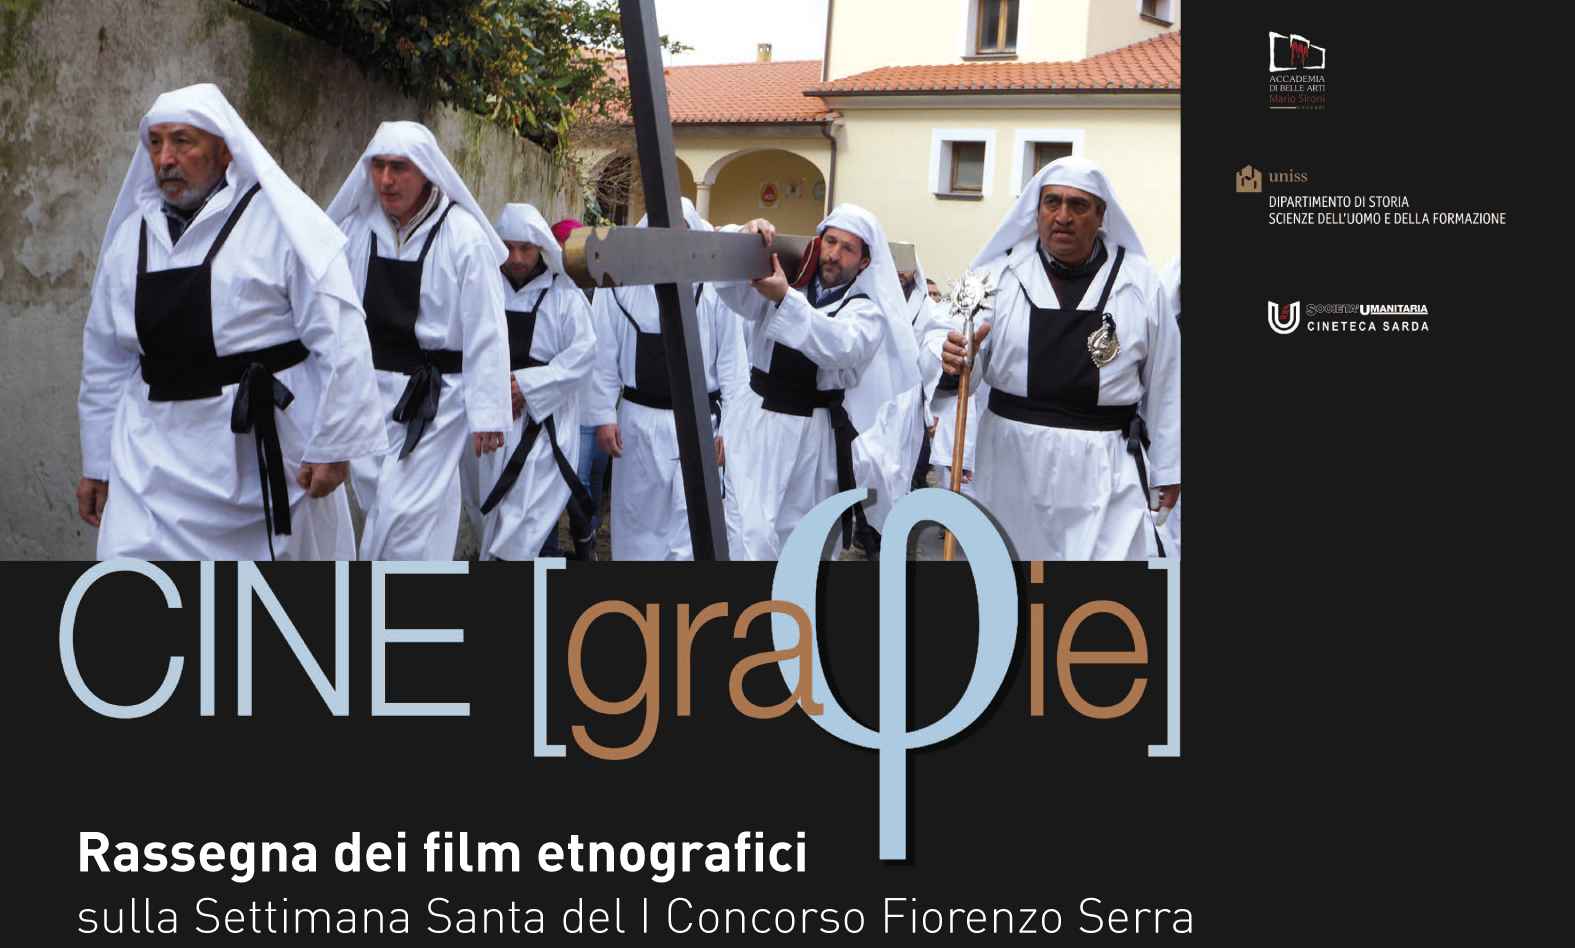 “Cinegrafie”, un’interessante rassegna di film etnografici a Sassari